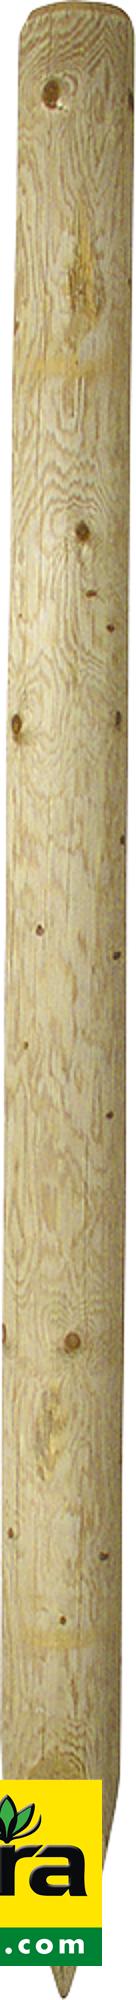 Holzpfosten, 2,25 m, imprägniert, gespitzt, d= 10 cm